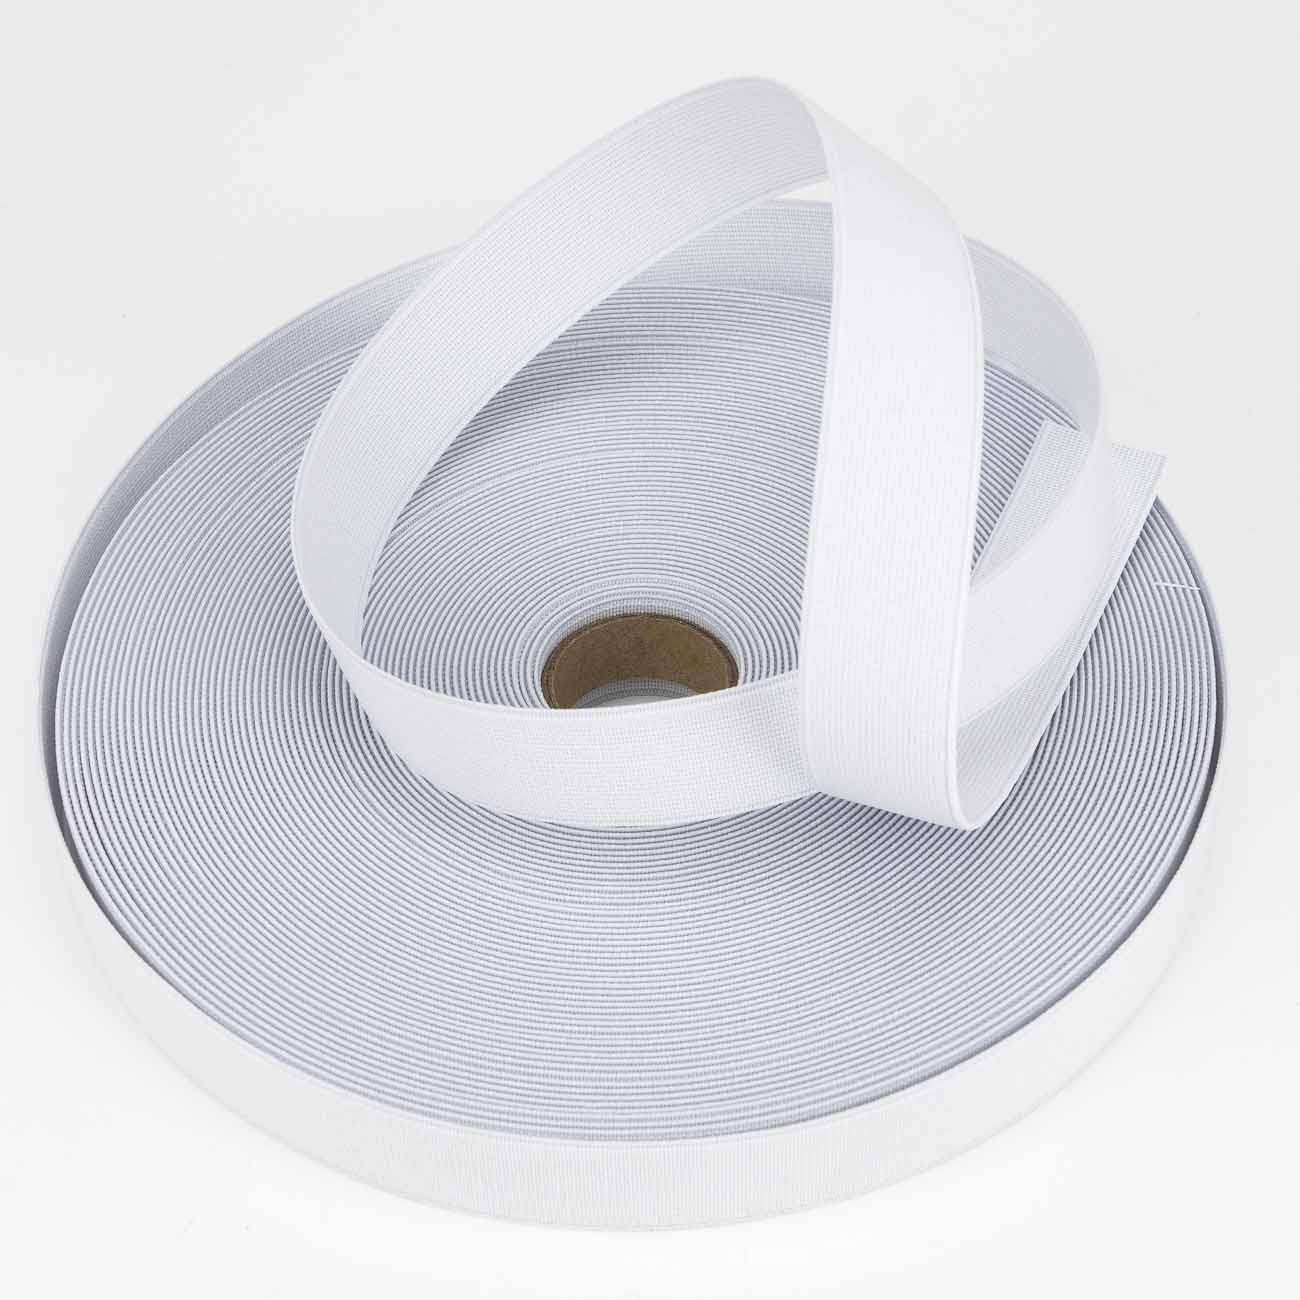 Designers-Factory Cinta elástica elástica, 1 cm de ancho, 5 m color blanco 